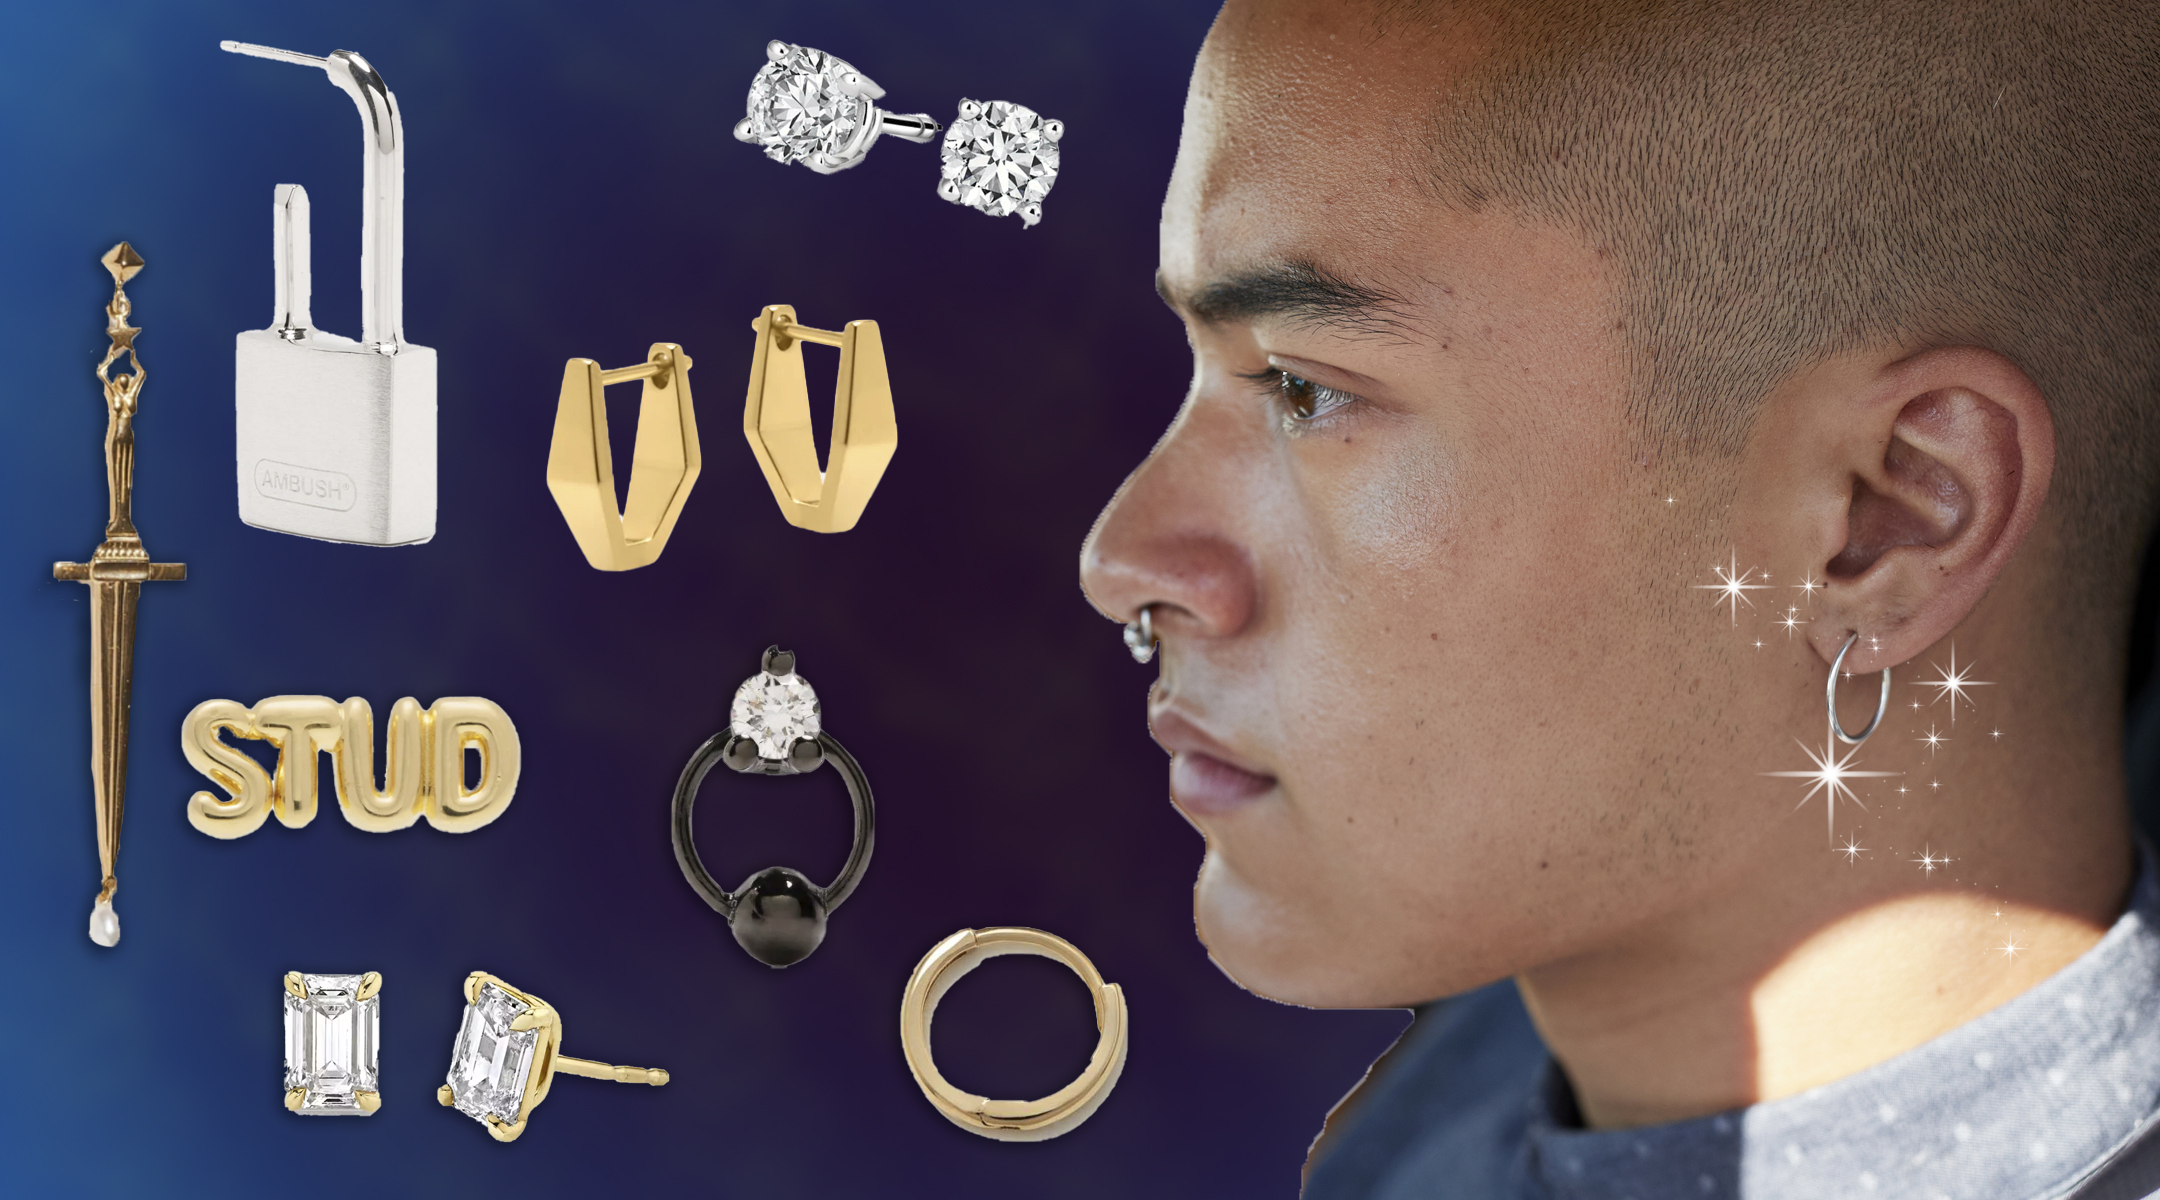 CZ Stud Huggies Hoop Earrings Double Earrings for Women's Men's Ear  Piercing in 14K Solid Gold Dainty Stud Earrings for Everyday Jewelry -  Walmart.com